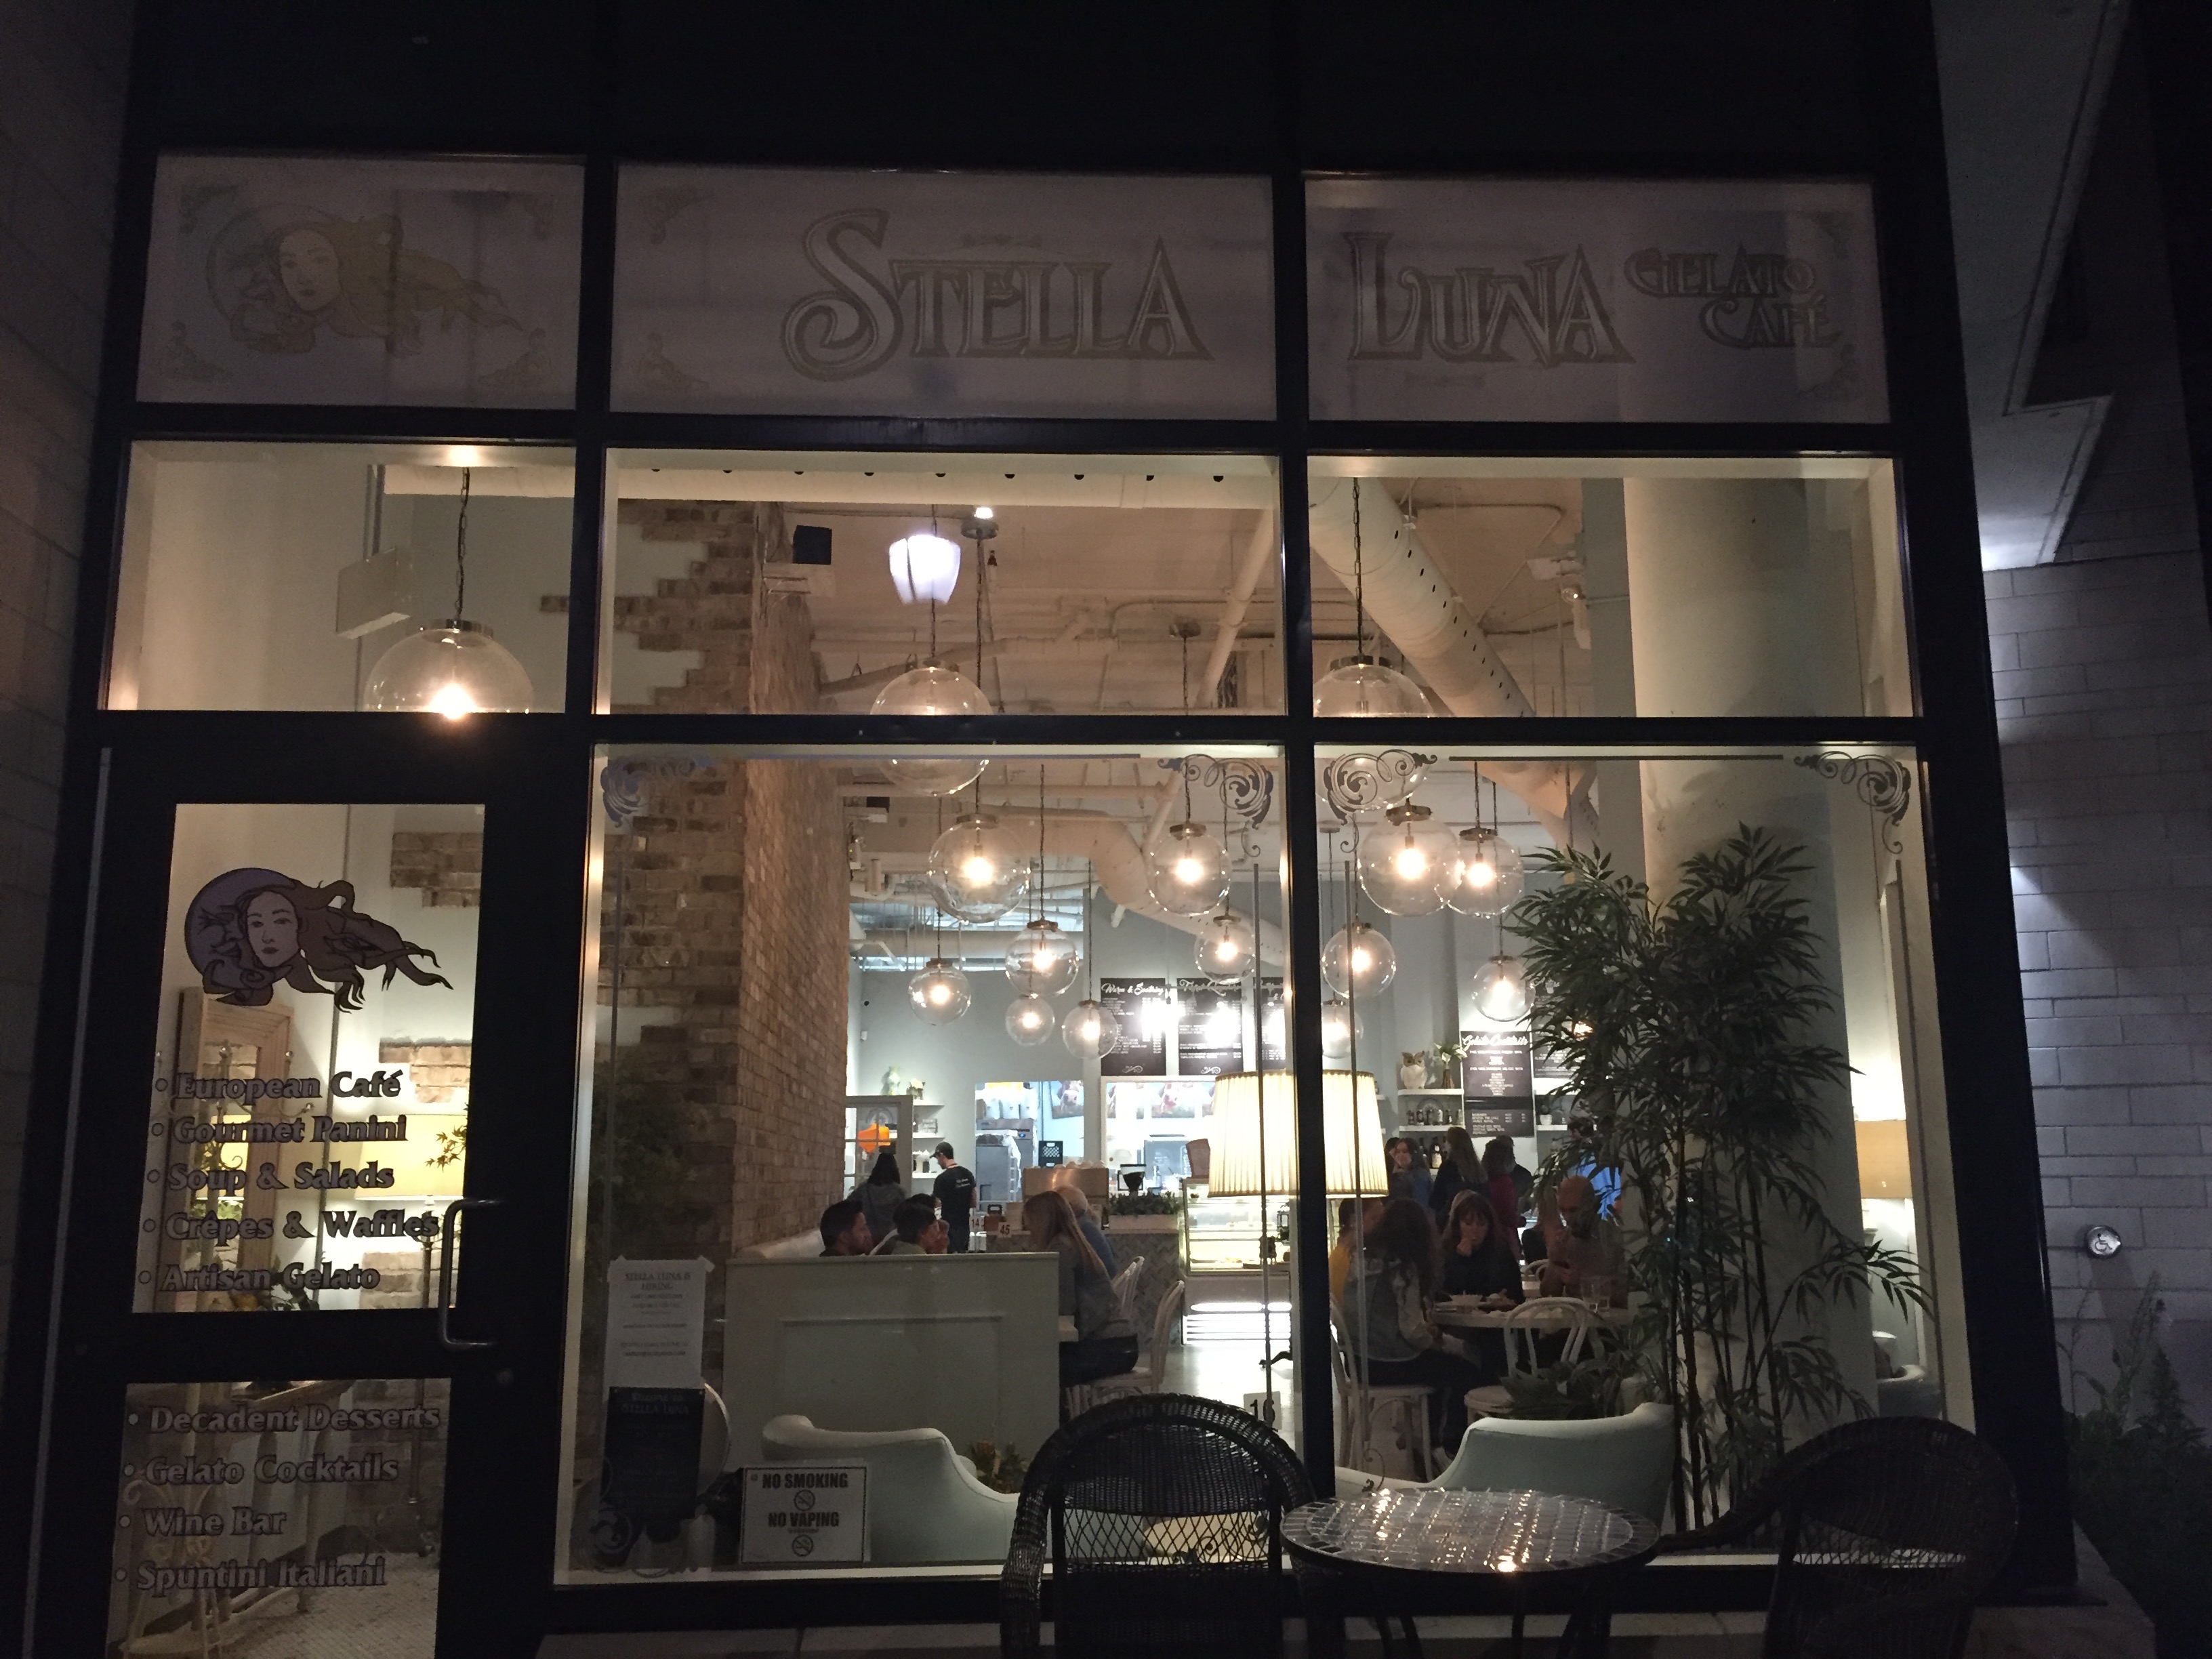 Breakfast & Dessert in Ottawa: Baker Street Cafe & Stella Luna